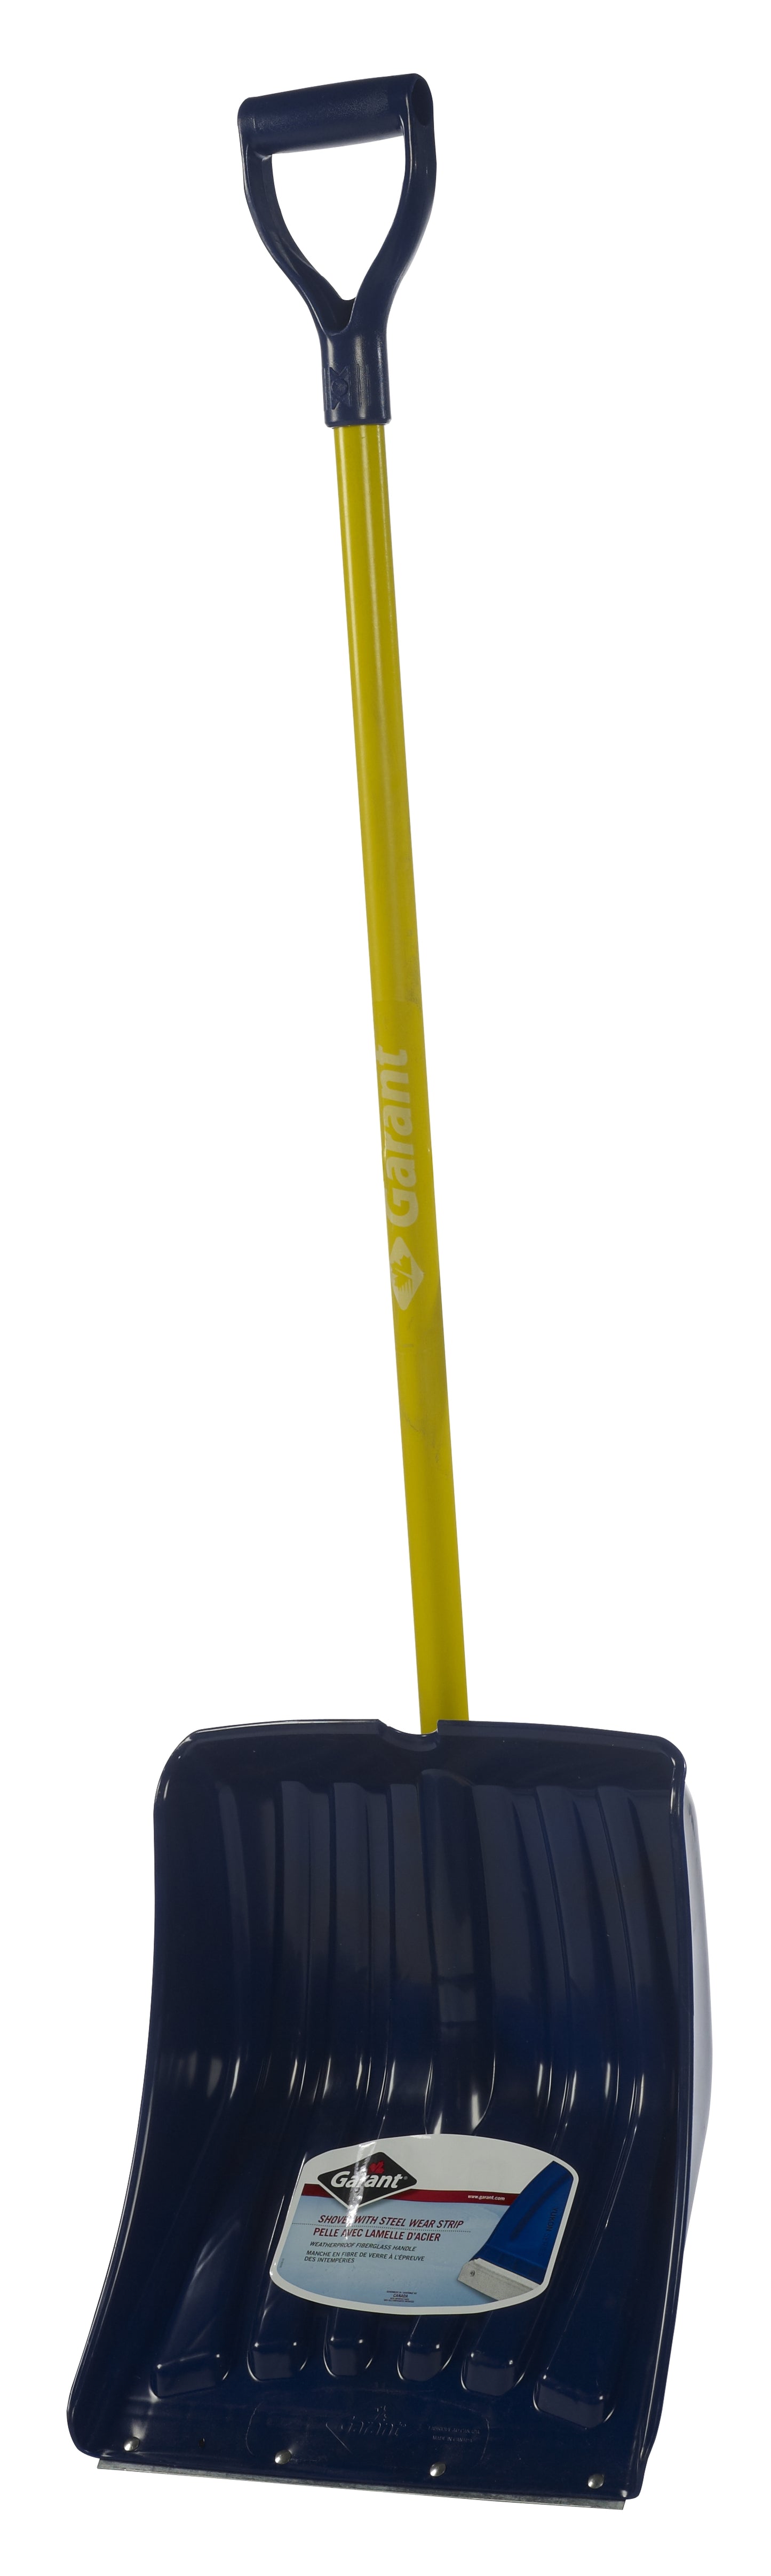 Snow shovel, fiberglass handle, 13.9" poly blade